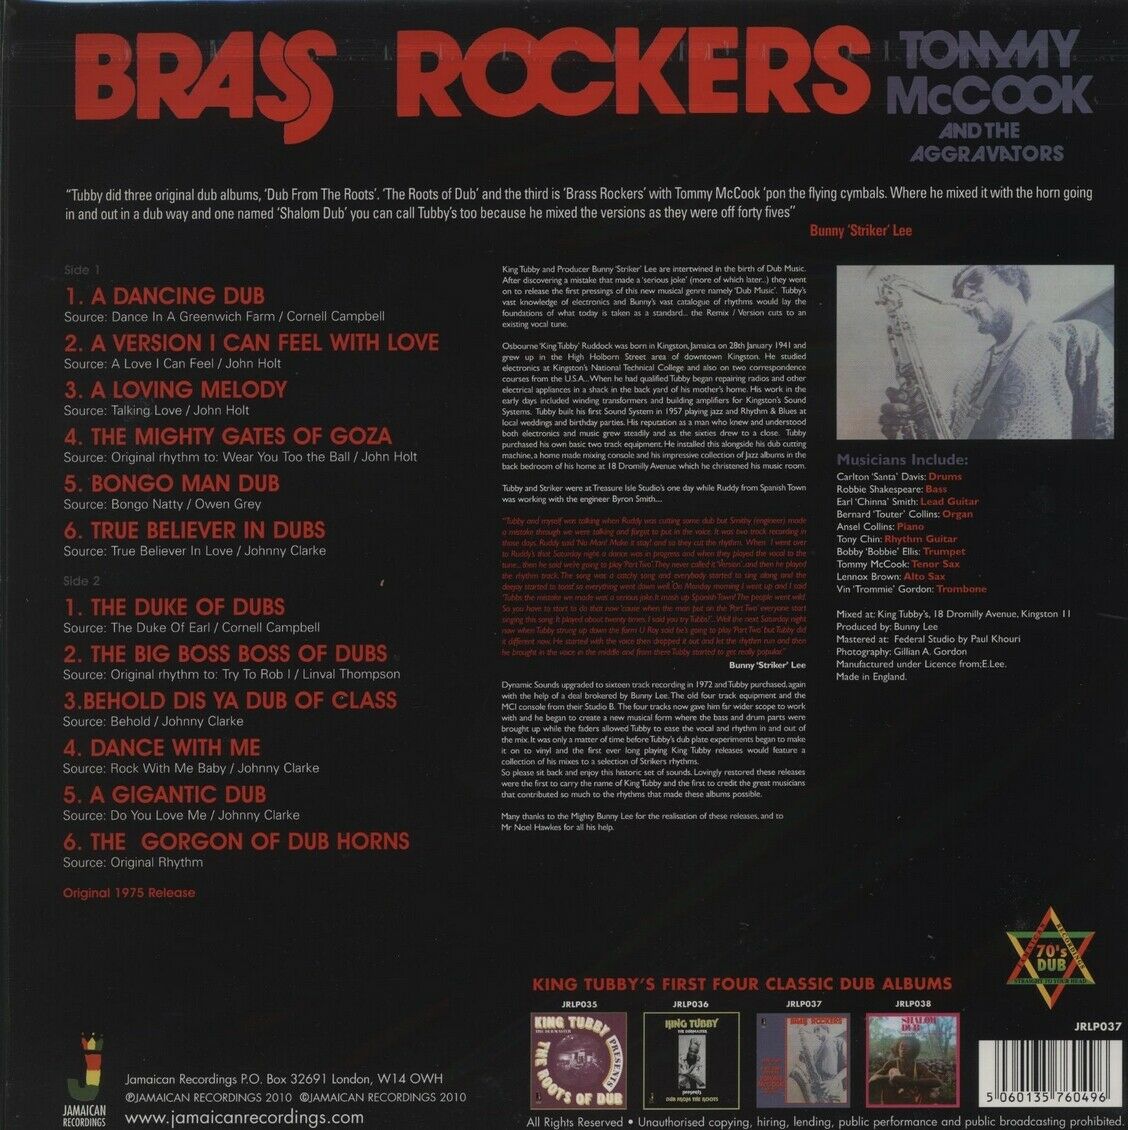 레게 음악 모음 - 브라스 라커즈 (Brass Rockers) [LP] 